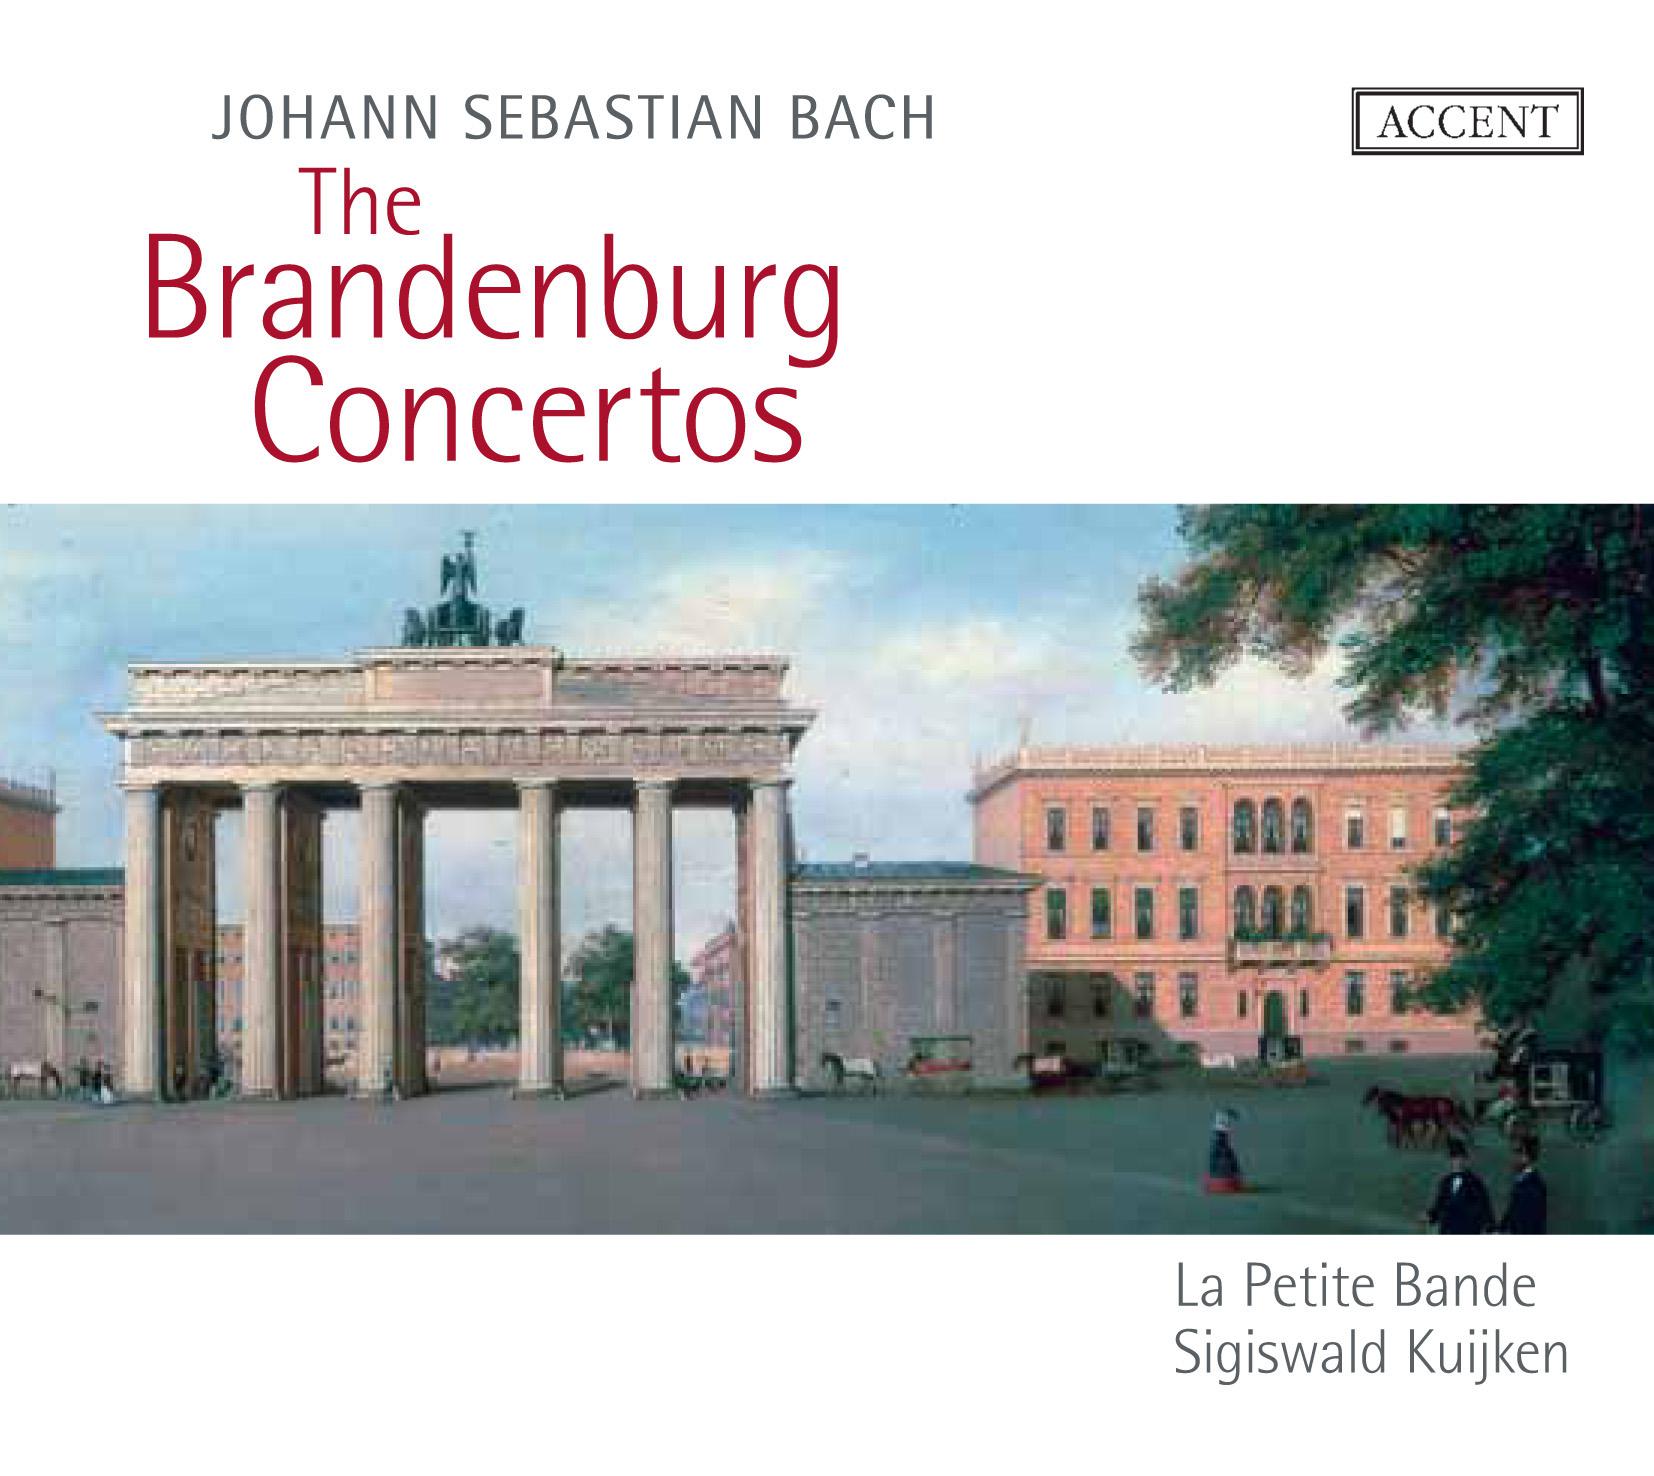 Brandenburg Concerto No. 1 in F Major, BWV 1046: IV. Menuetto - Trio I - Polacca - Trio II